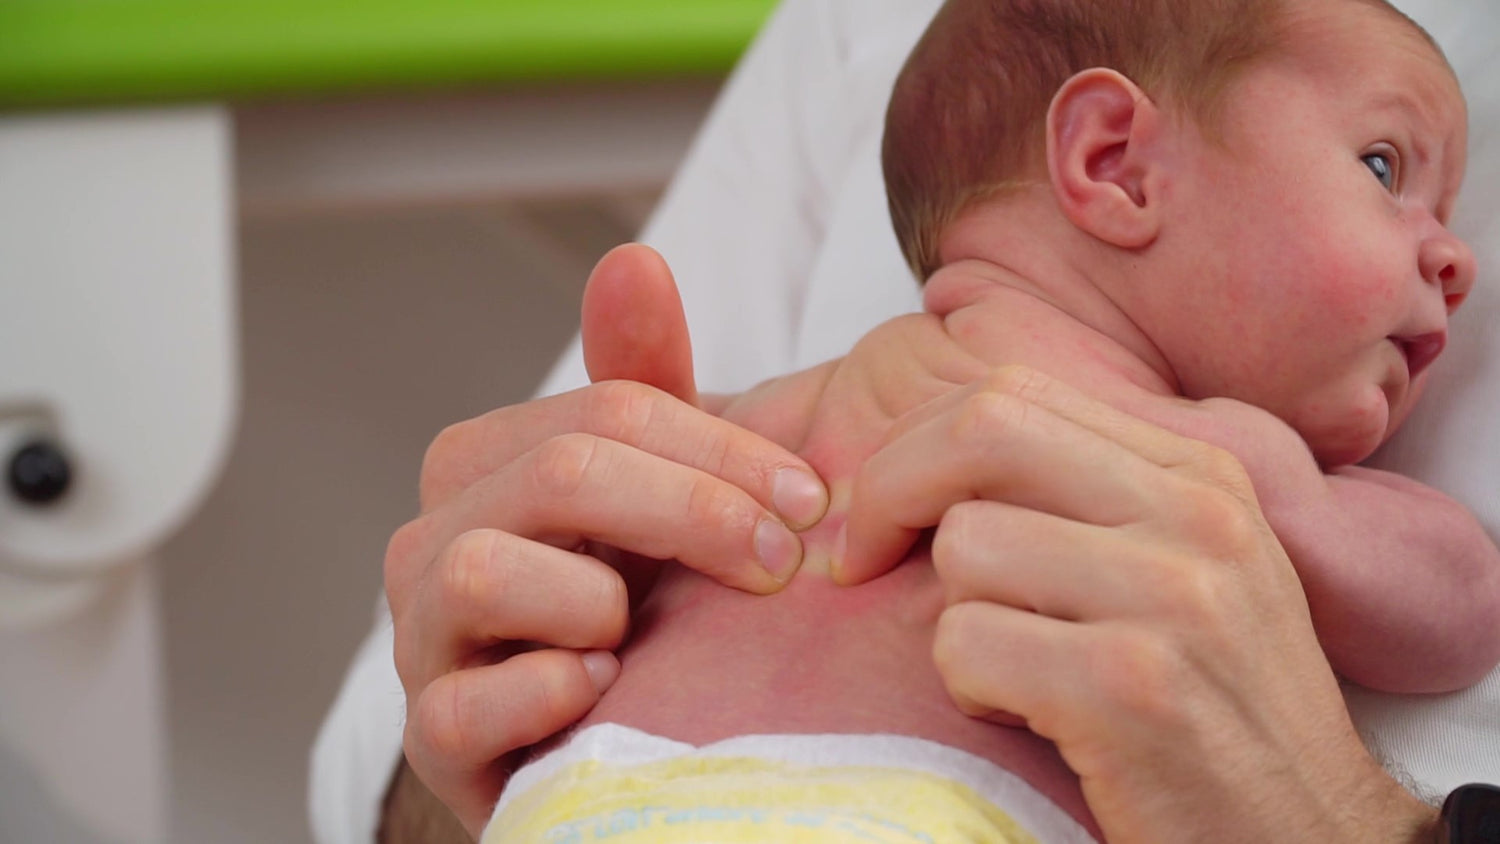 videocorso osteo massage al neonato: come massaggiare la schiena e il collo del neonato 